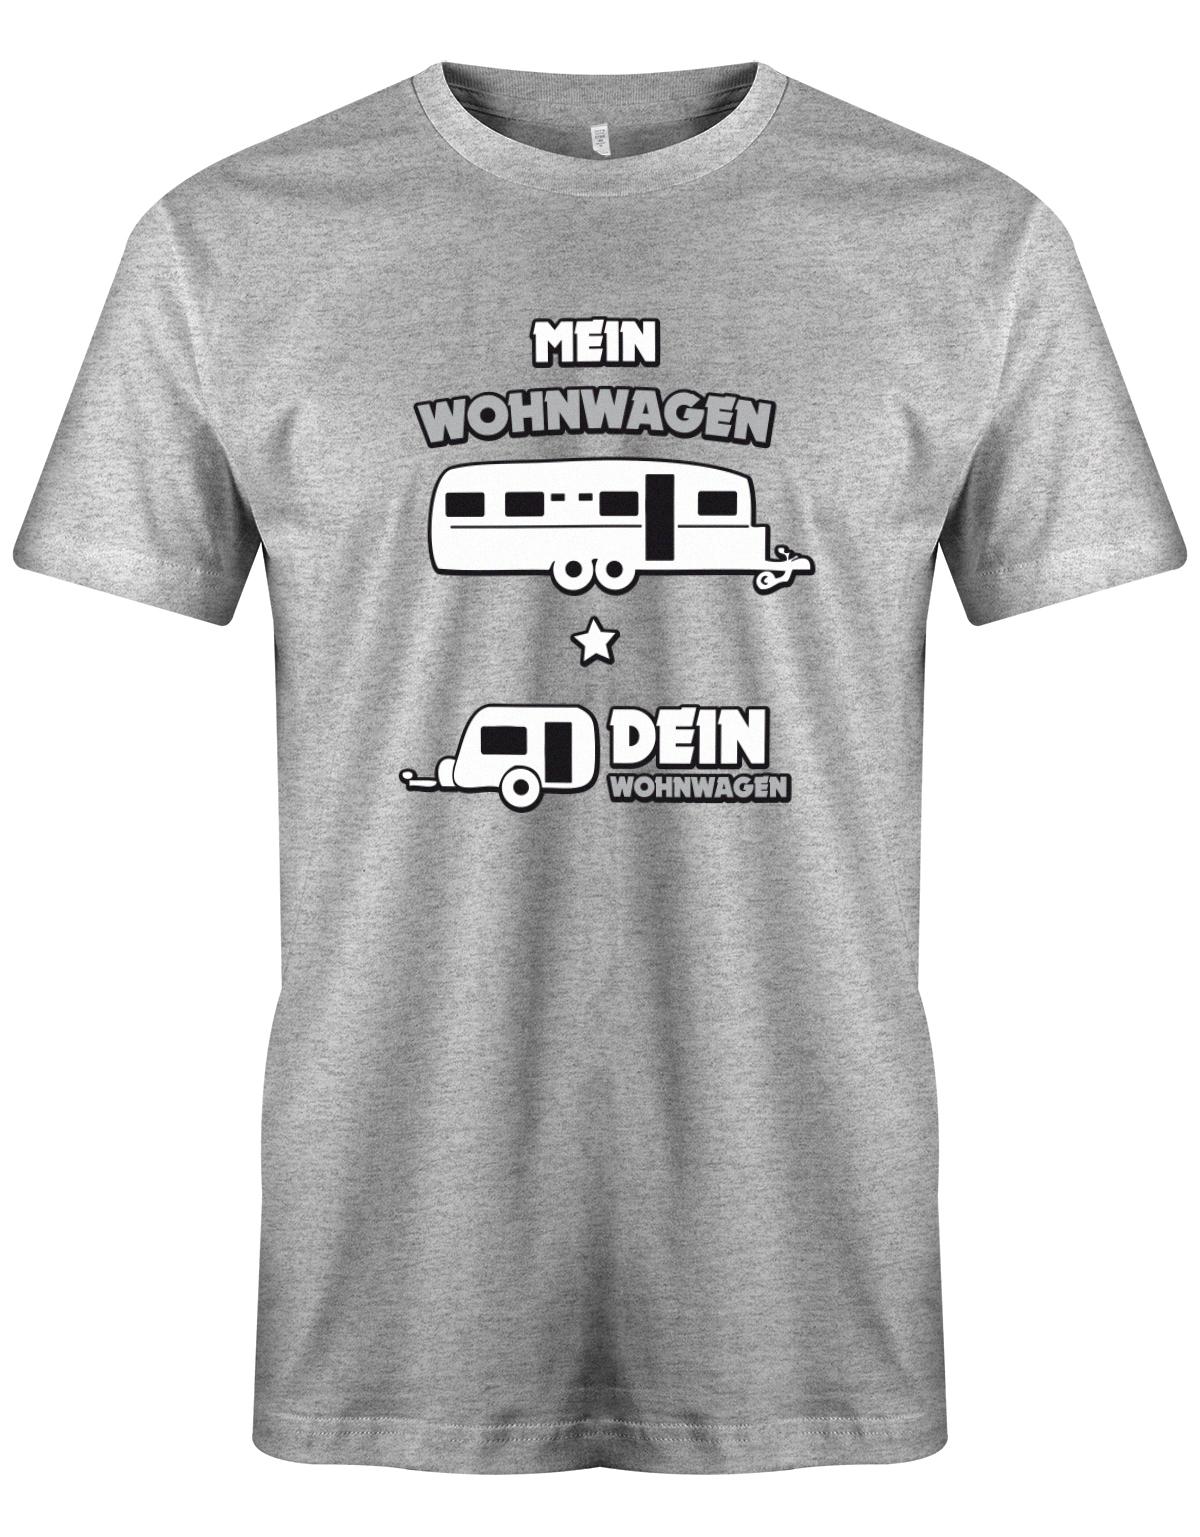 Mein-Wohnwagen-Dein-Wohnwagen-herren-Camper-Shirt-GRau